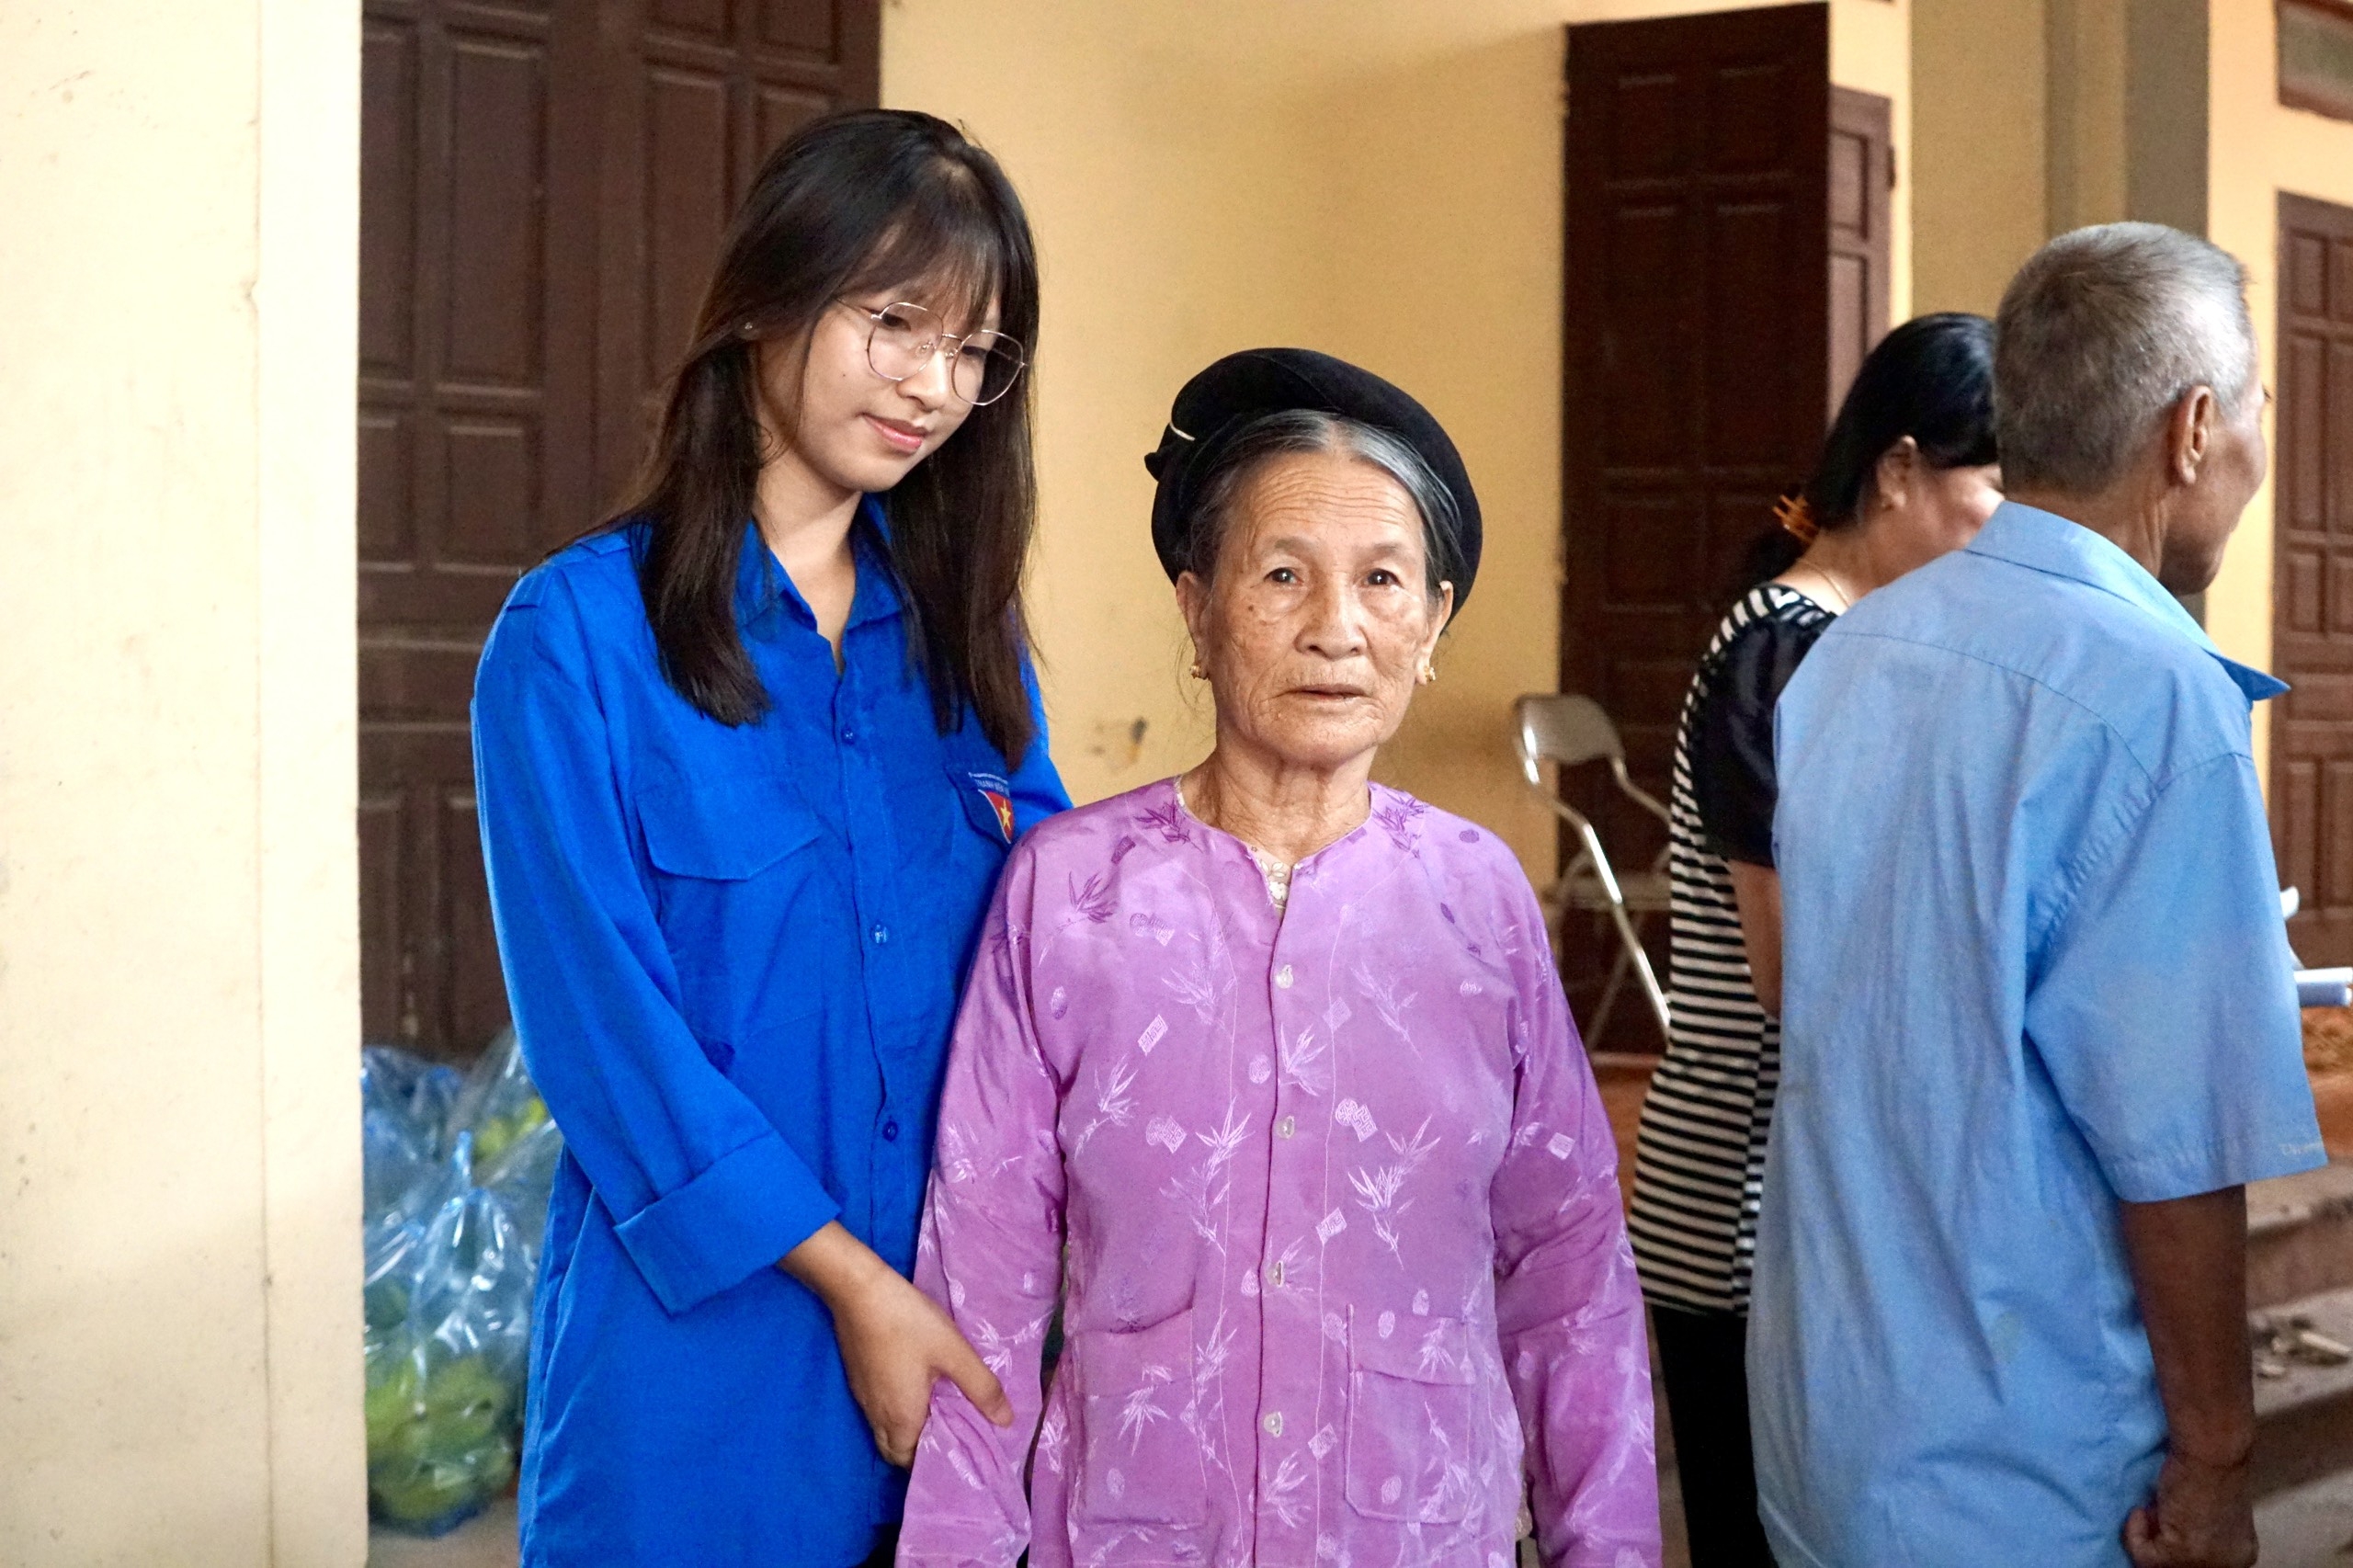 Khám, sàng lọc bệnh lý cho 300 người dân tại xã đảo Minh Châu